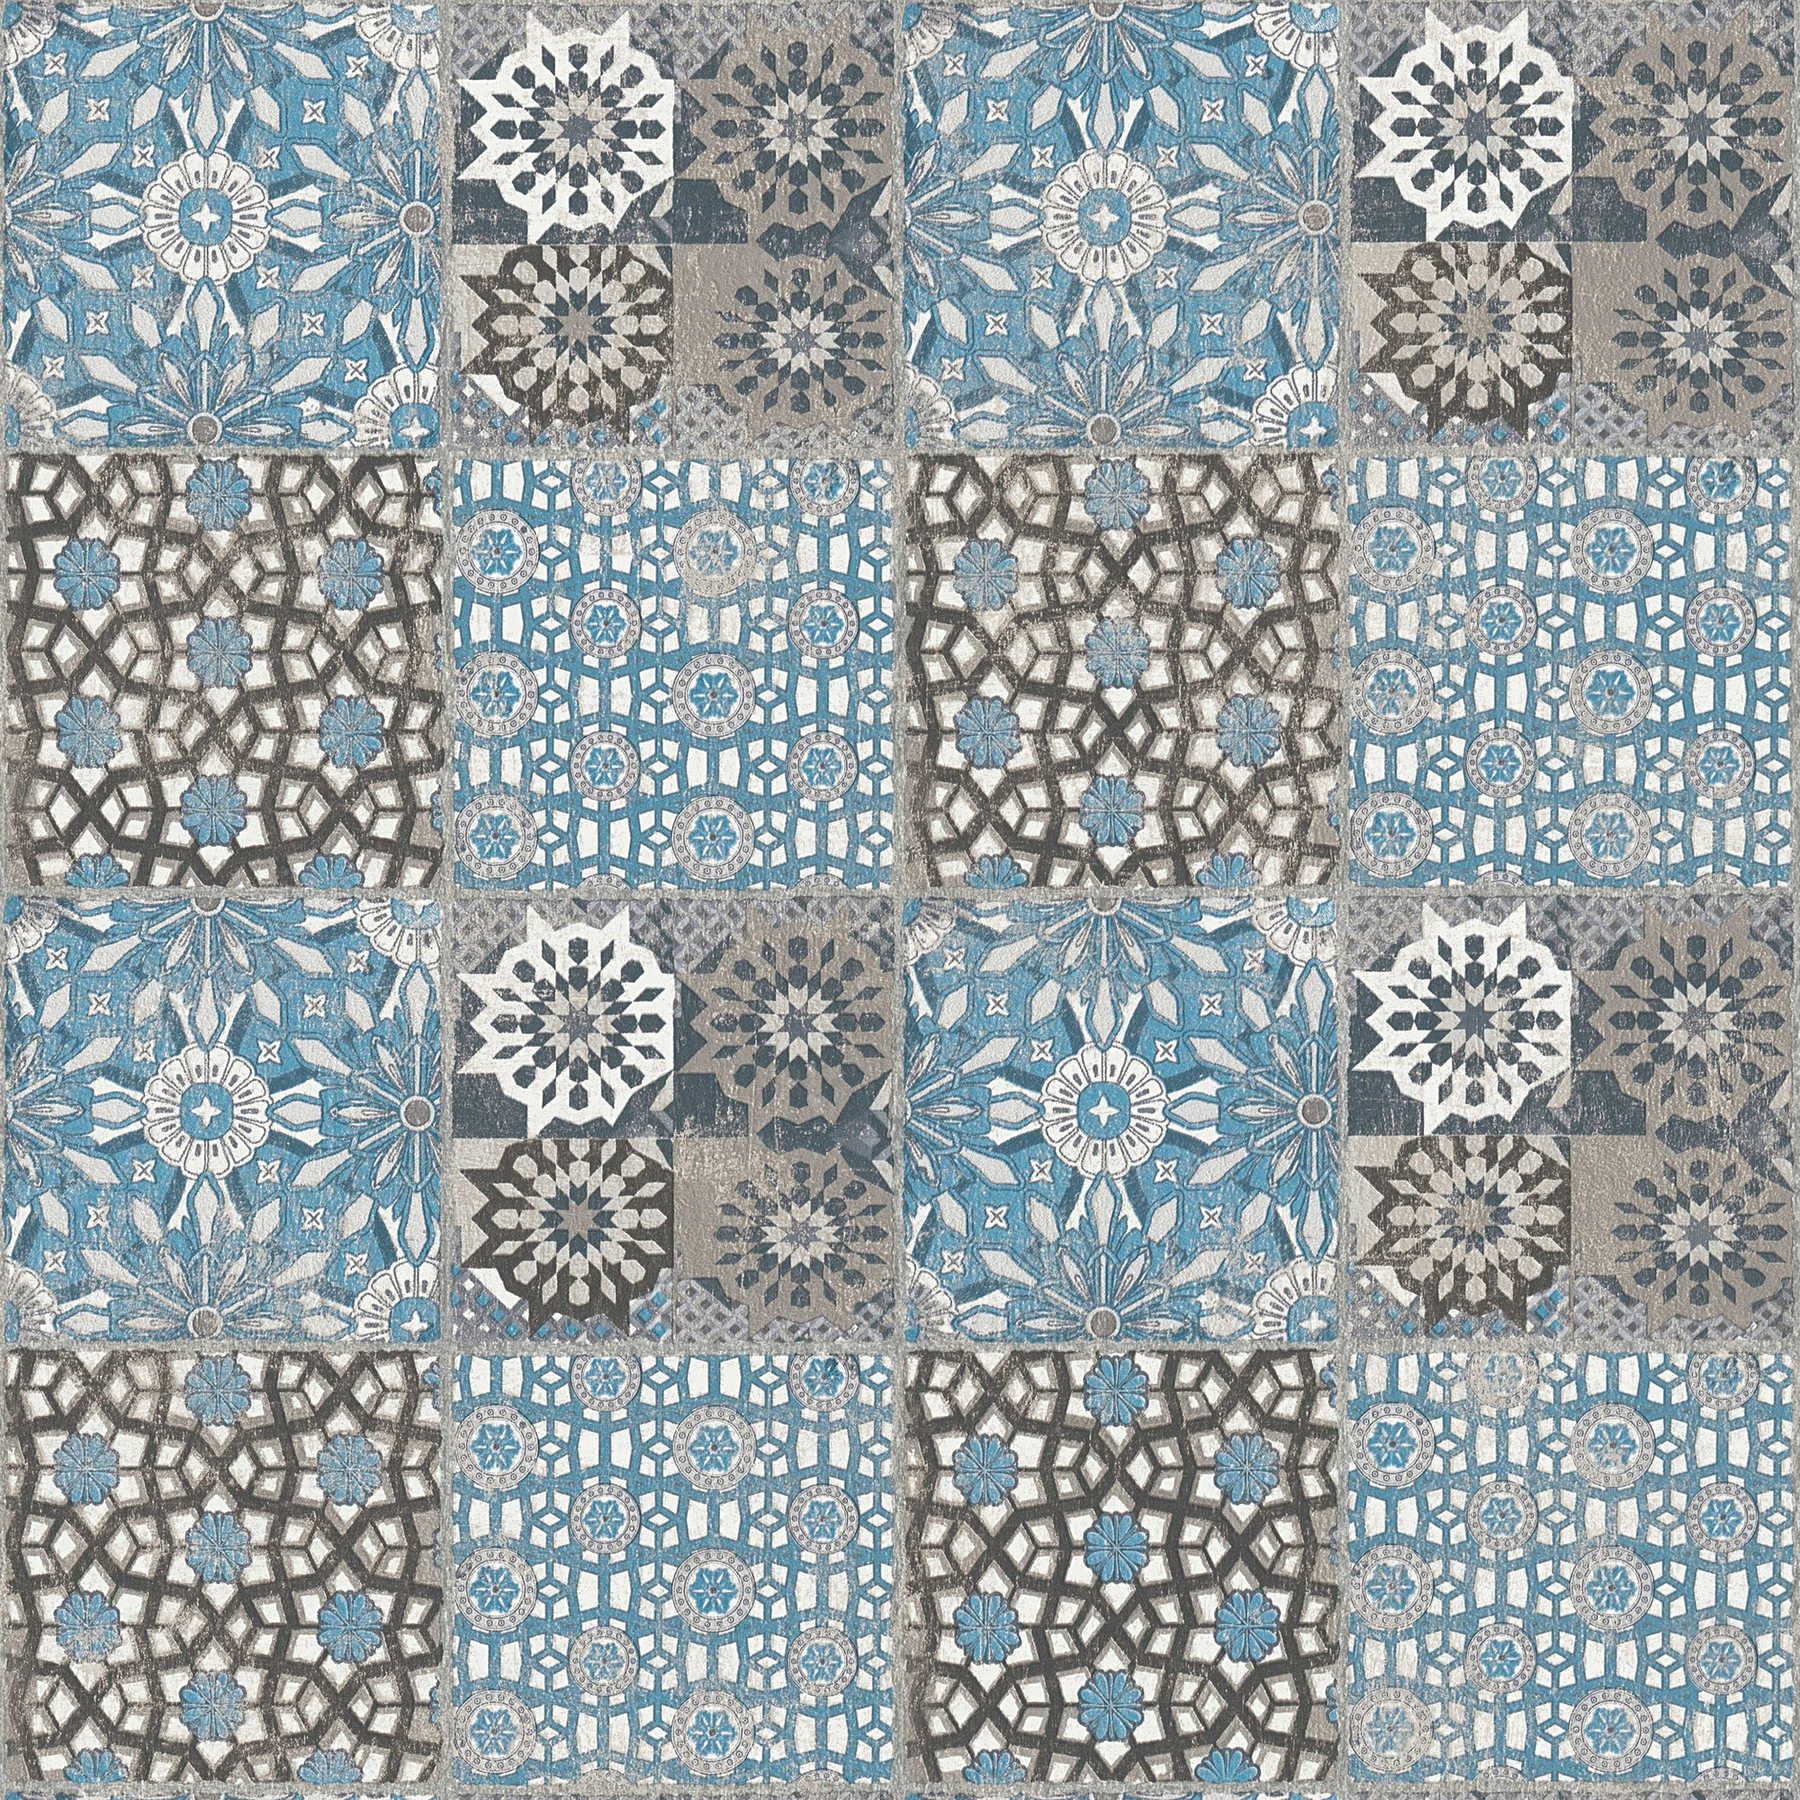         Papel pintado de azulejos con motivos retro y aspecto usado - azul, gris
    